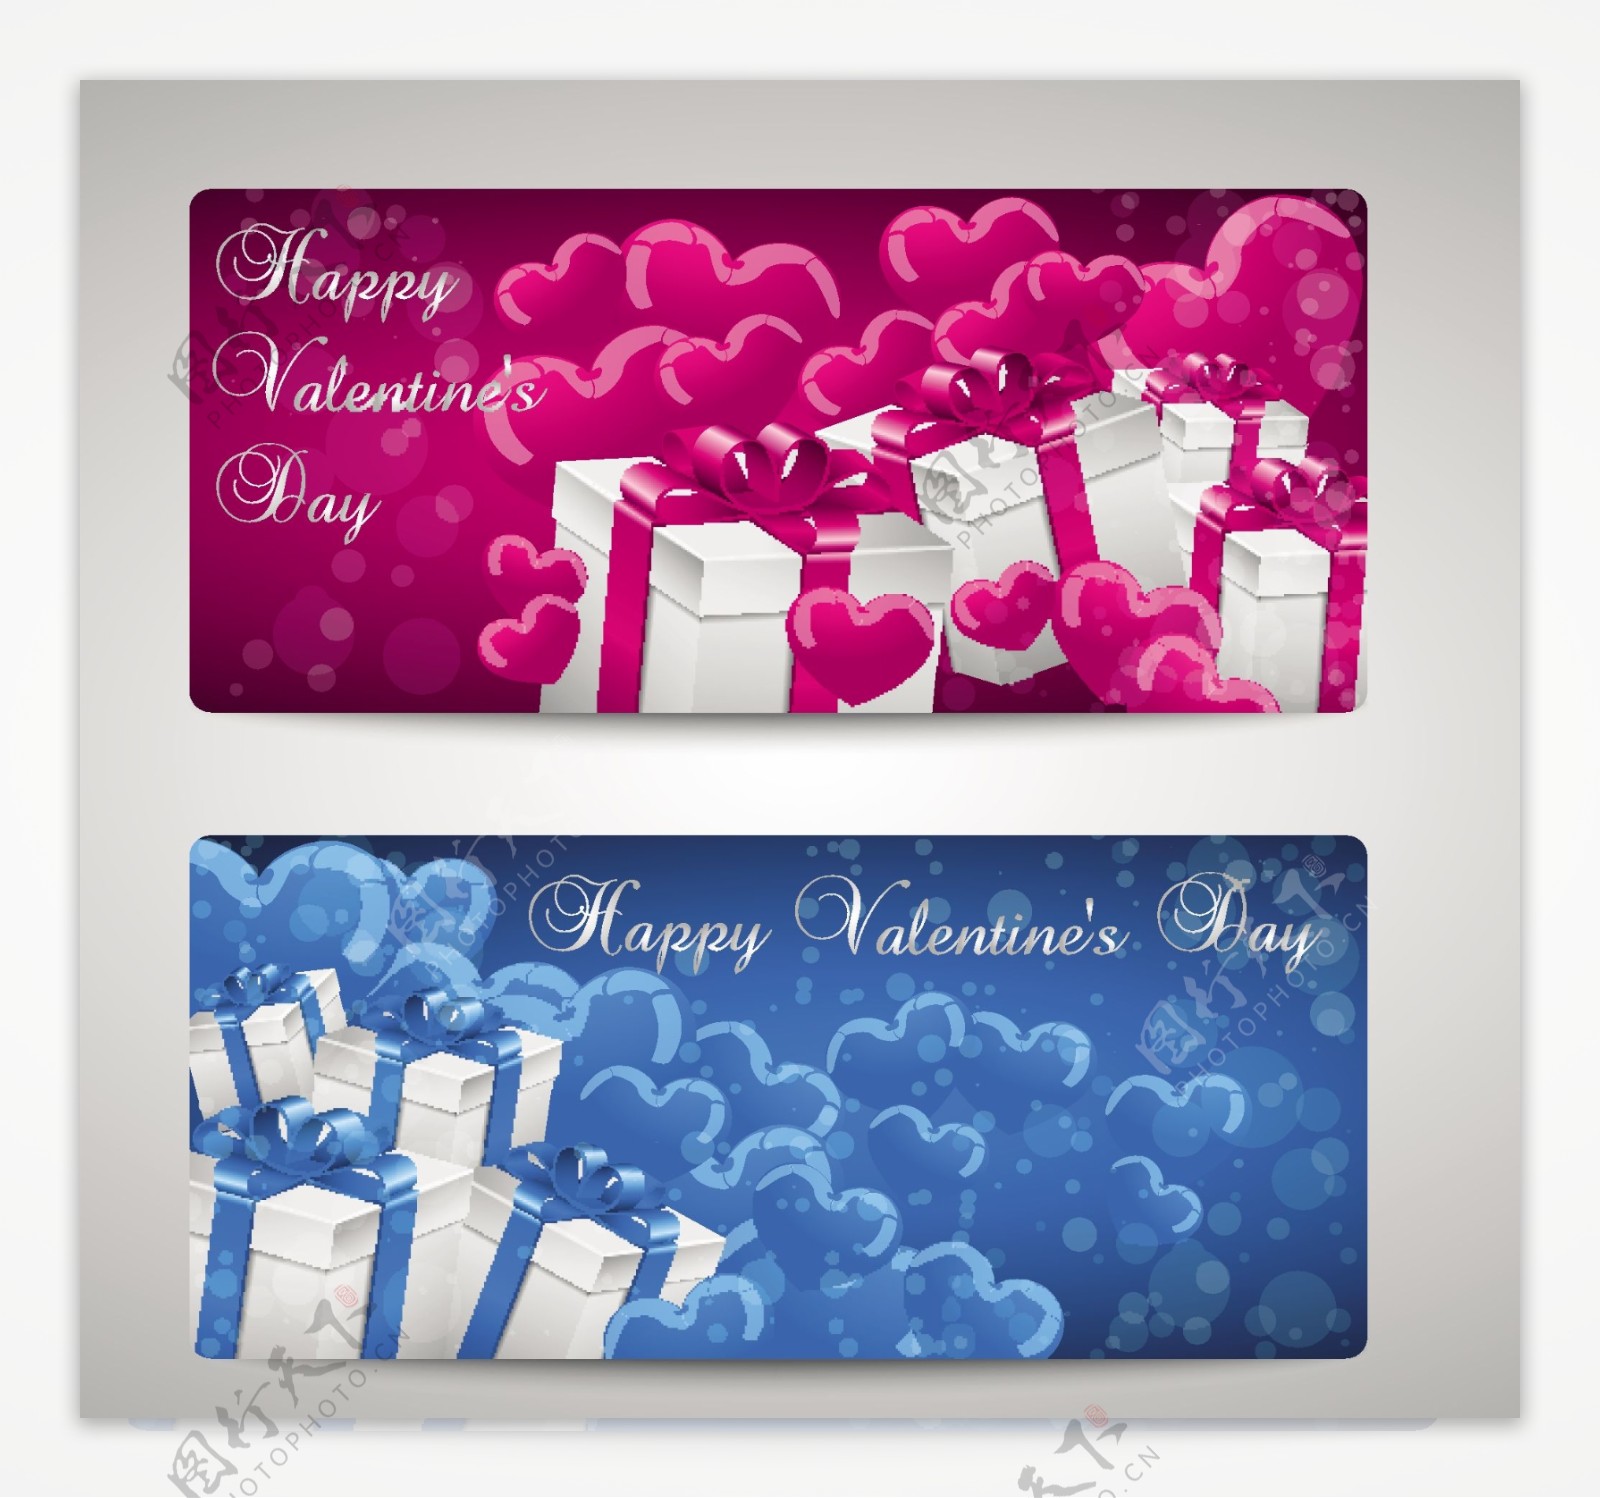 2款彩色爱心与礼盒卡片矢量素材